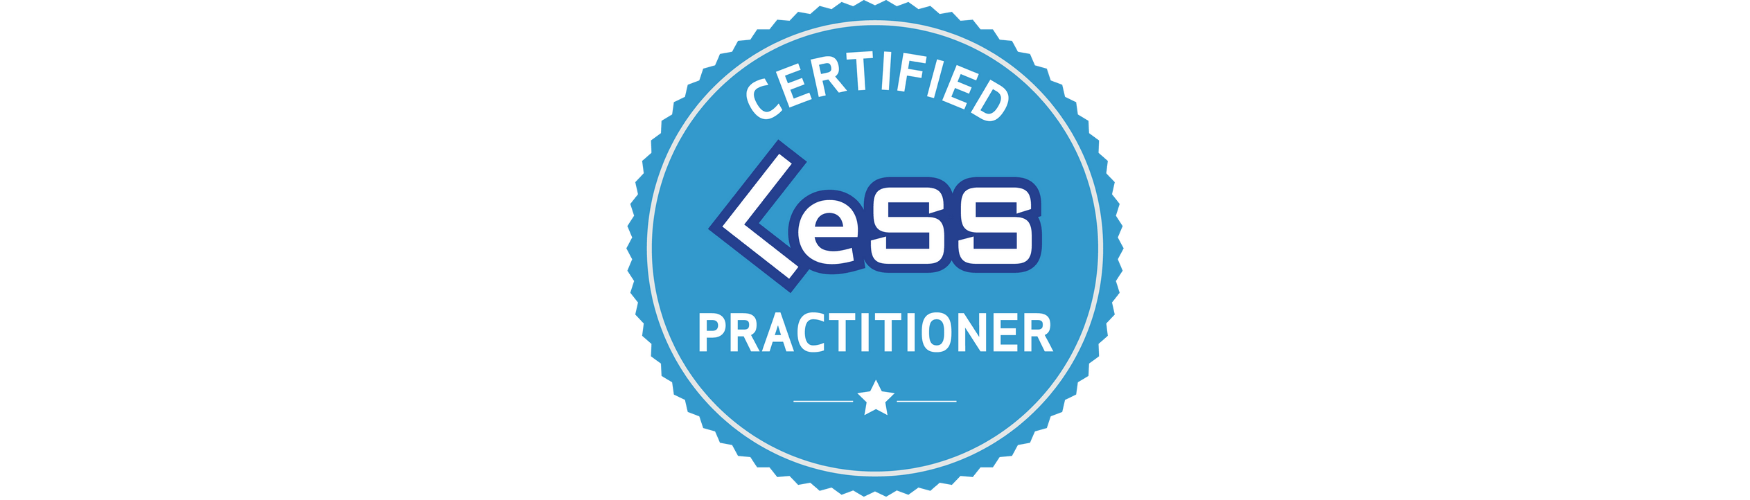 Certification Badge - LeSS - Konstantin Ribel